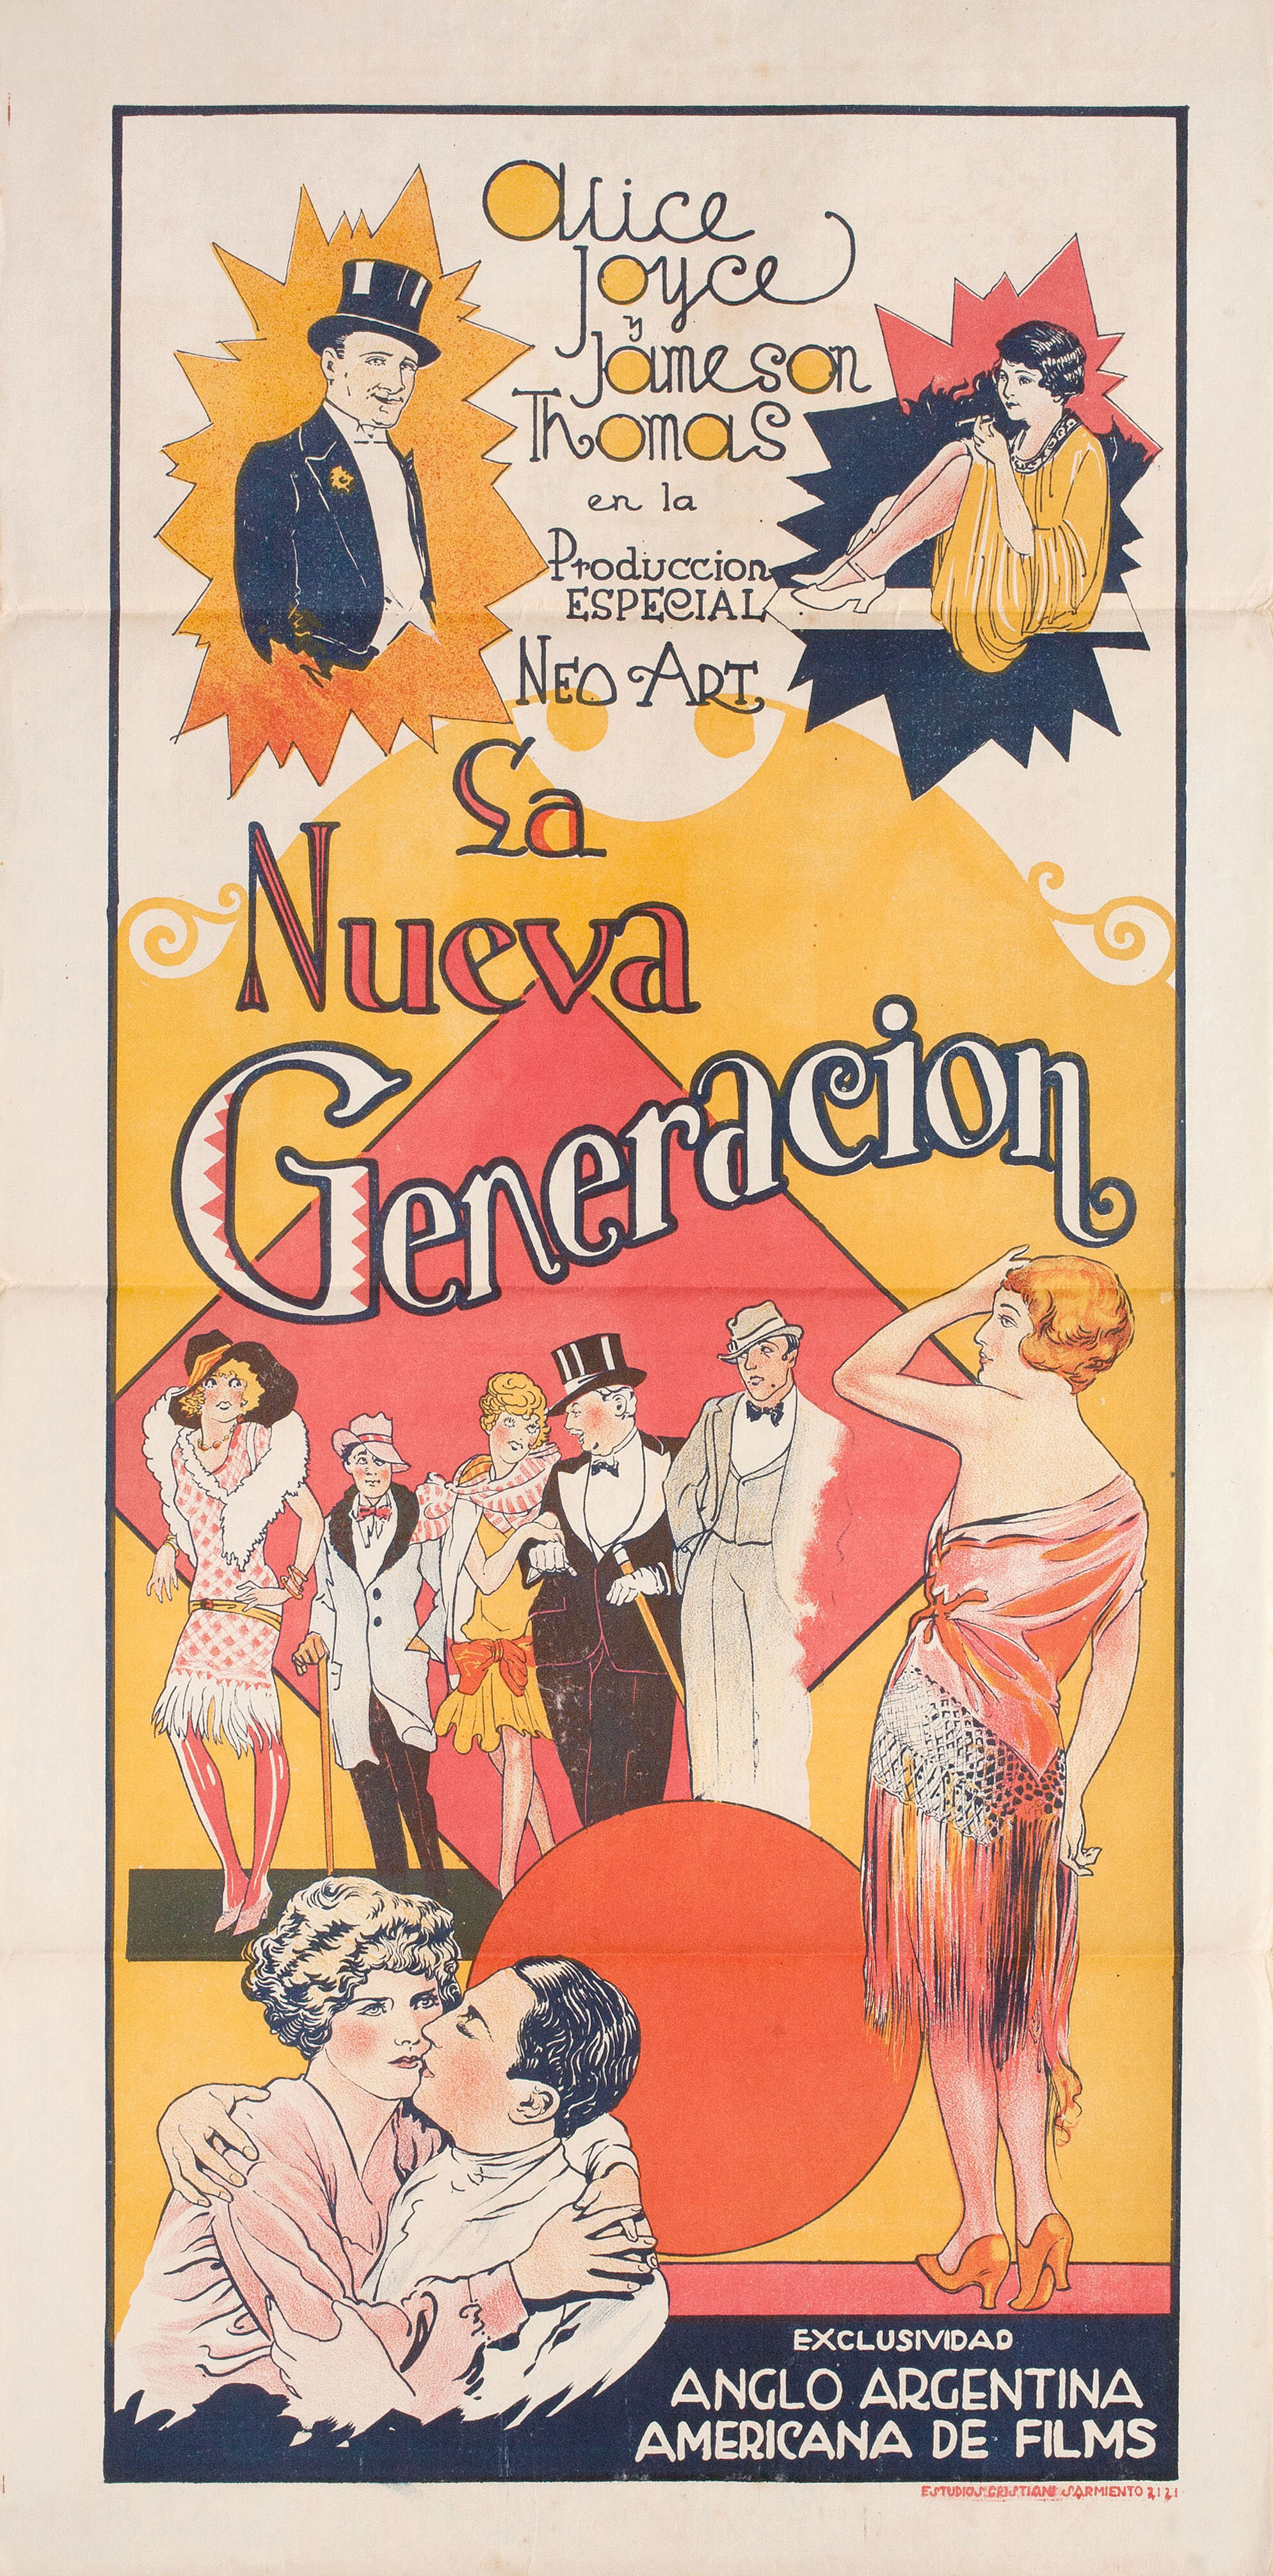 Подрастающее поколение (The Rising Generation, 1928), режиссёр Джордж Дьюхёрст, постер к фильму в стиле ар-деко (Аргентина, 1928 год)